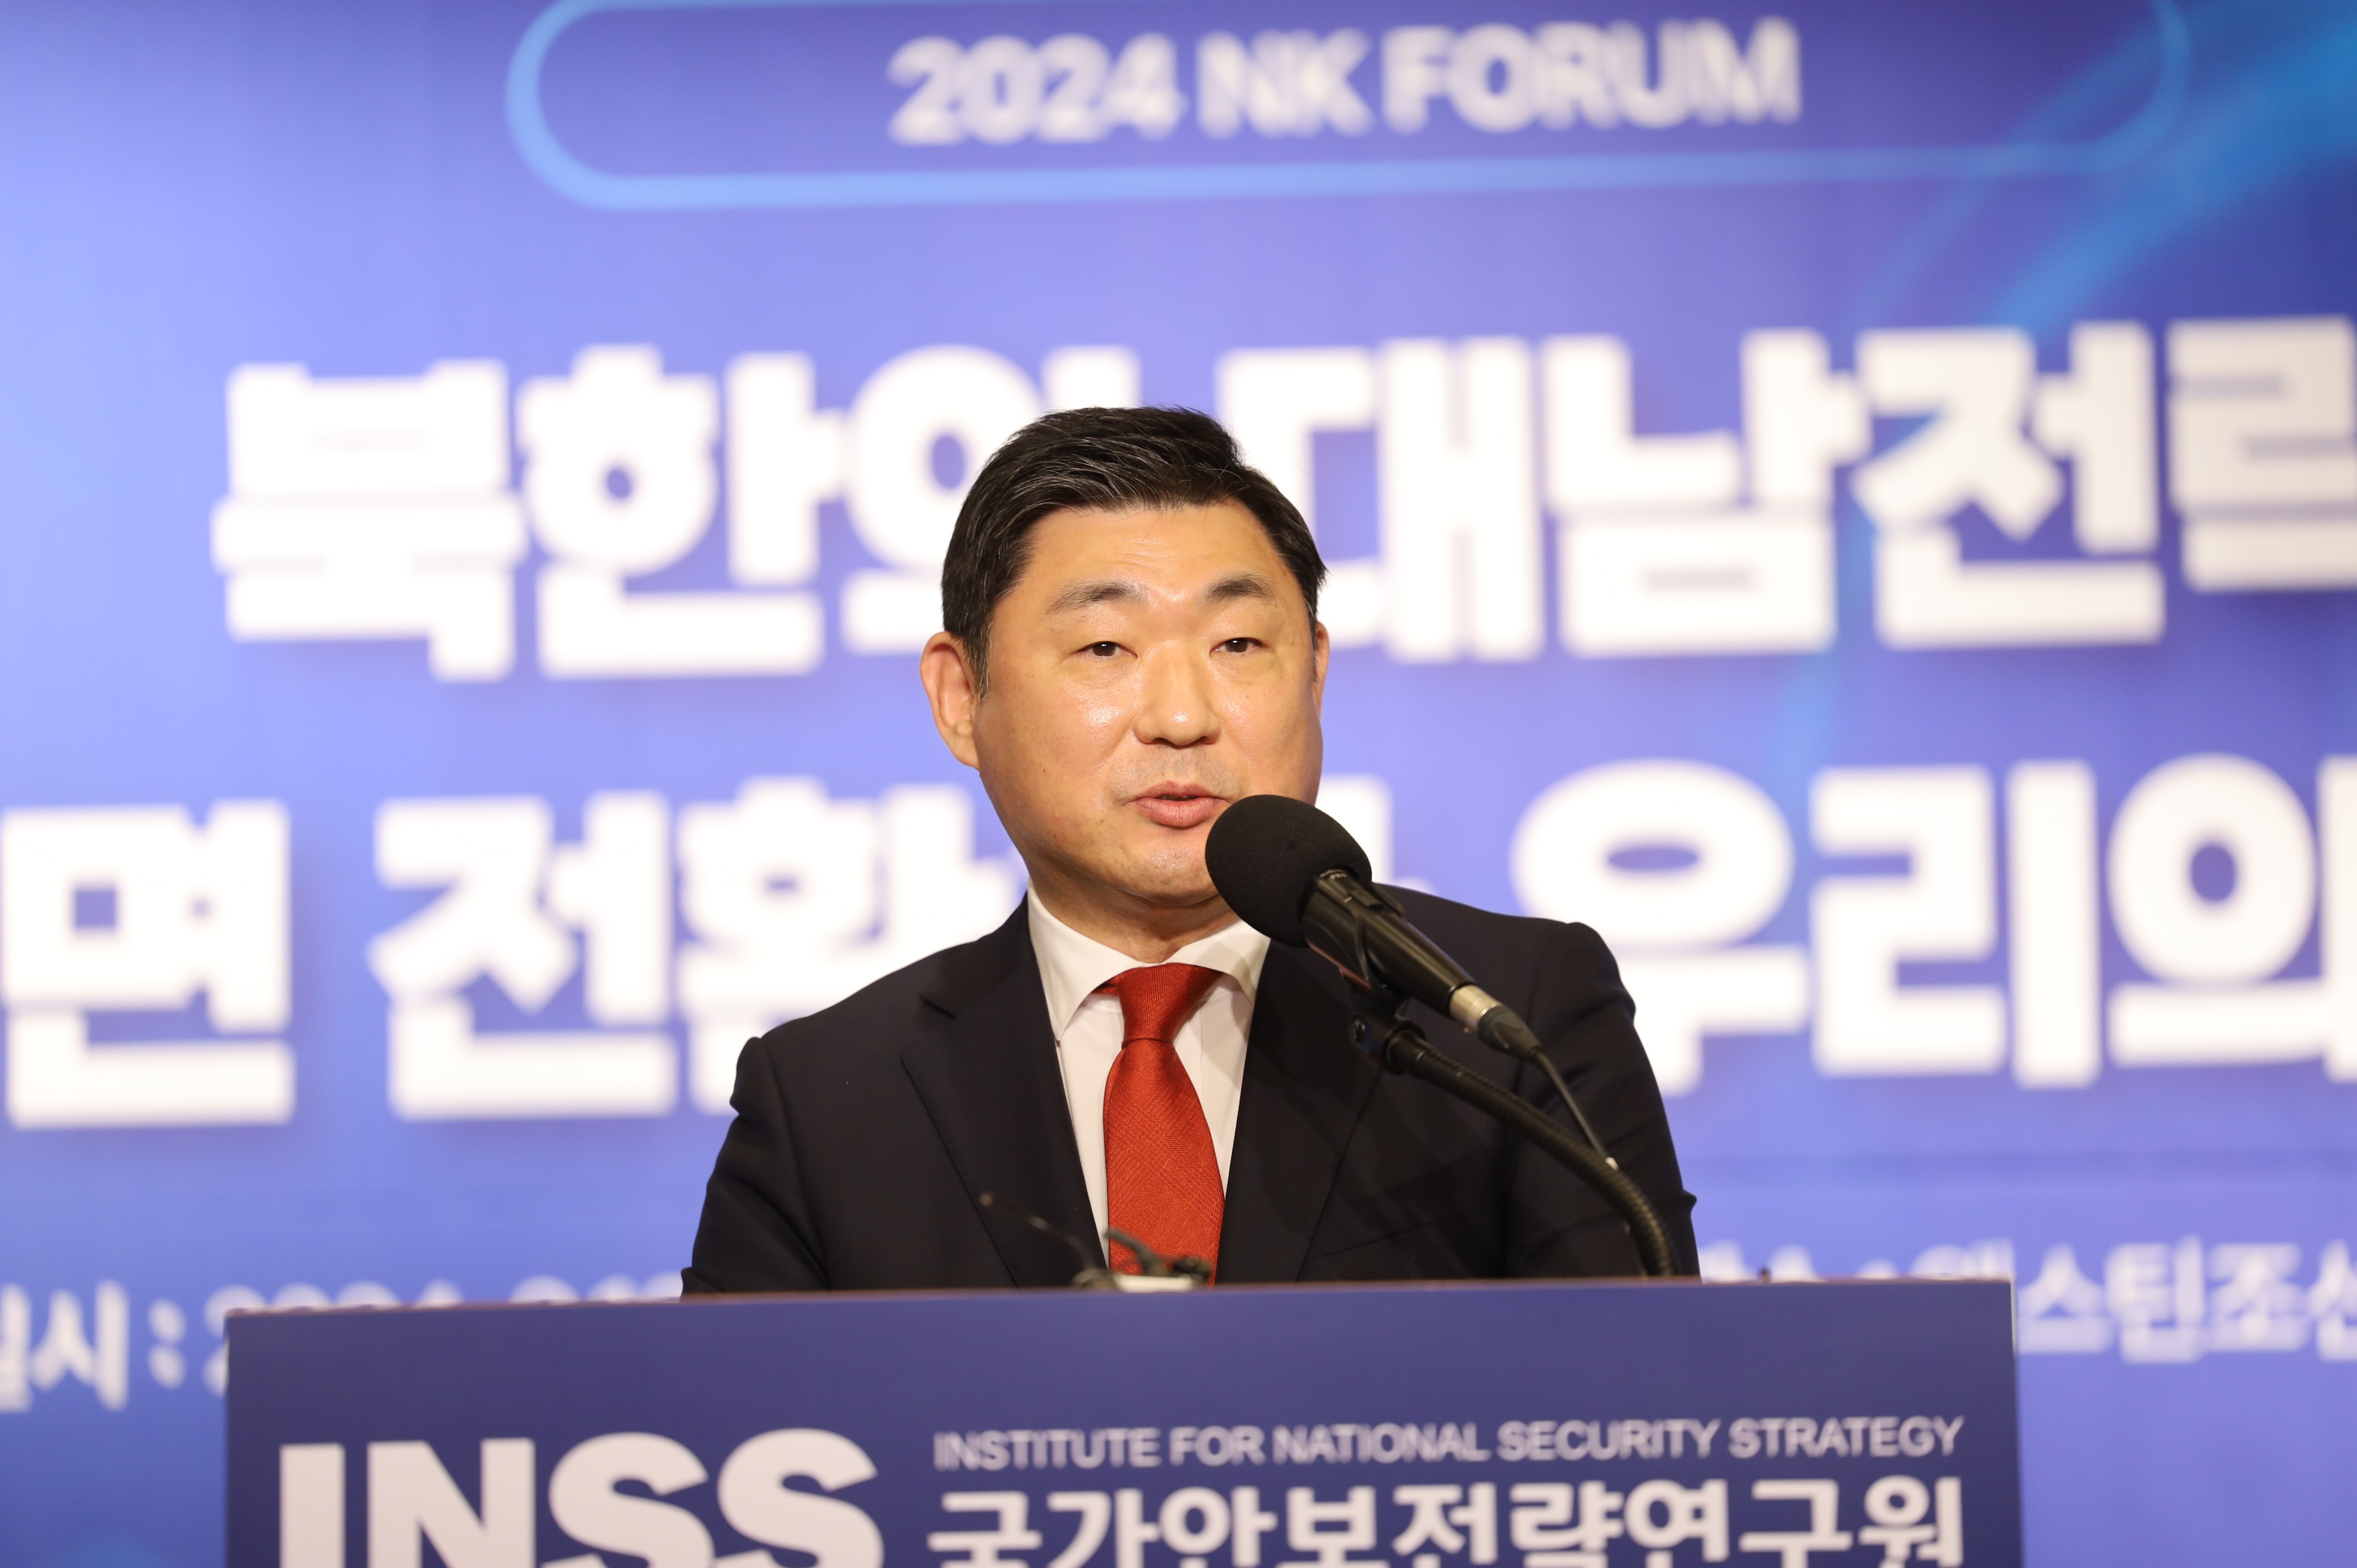 [NK포럼] 북한의 대남전략 ‘전면 전환’과 우리의 대응